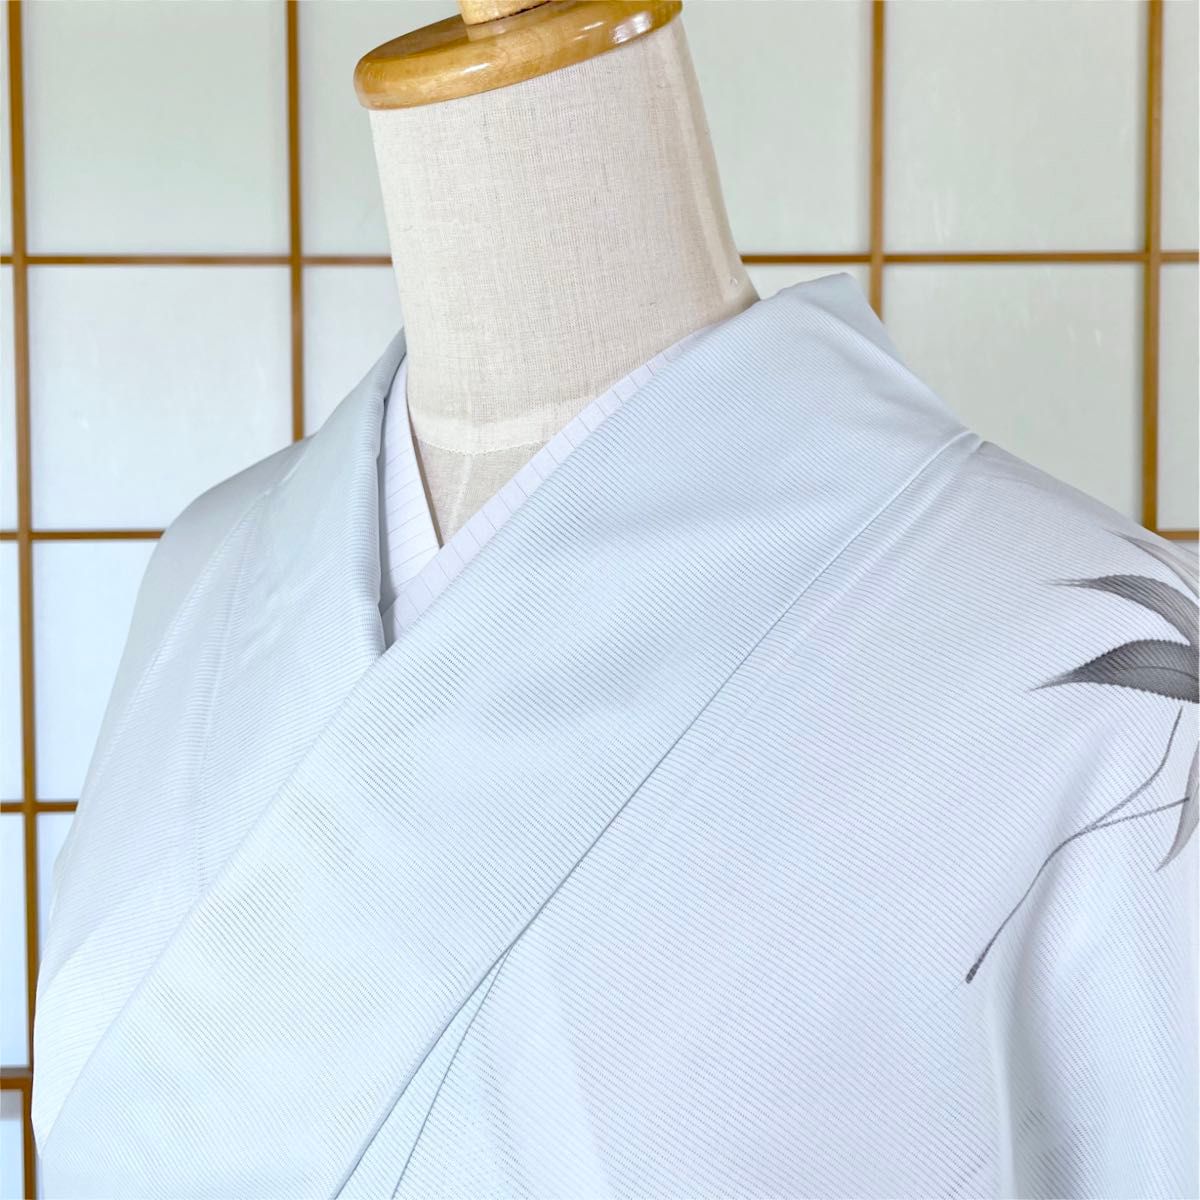 【新品】Tシャツ半襦袢 Lサイズ 夏用 絽衿 着物インナー 日本製 kimonolove